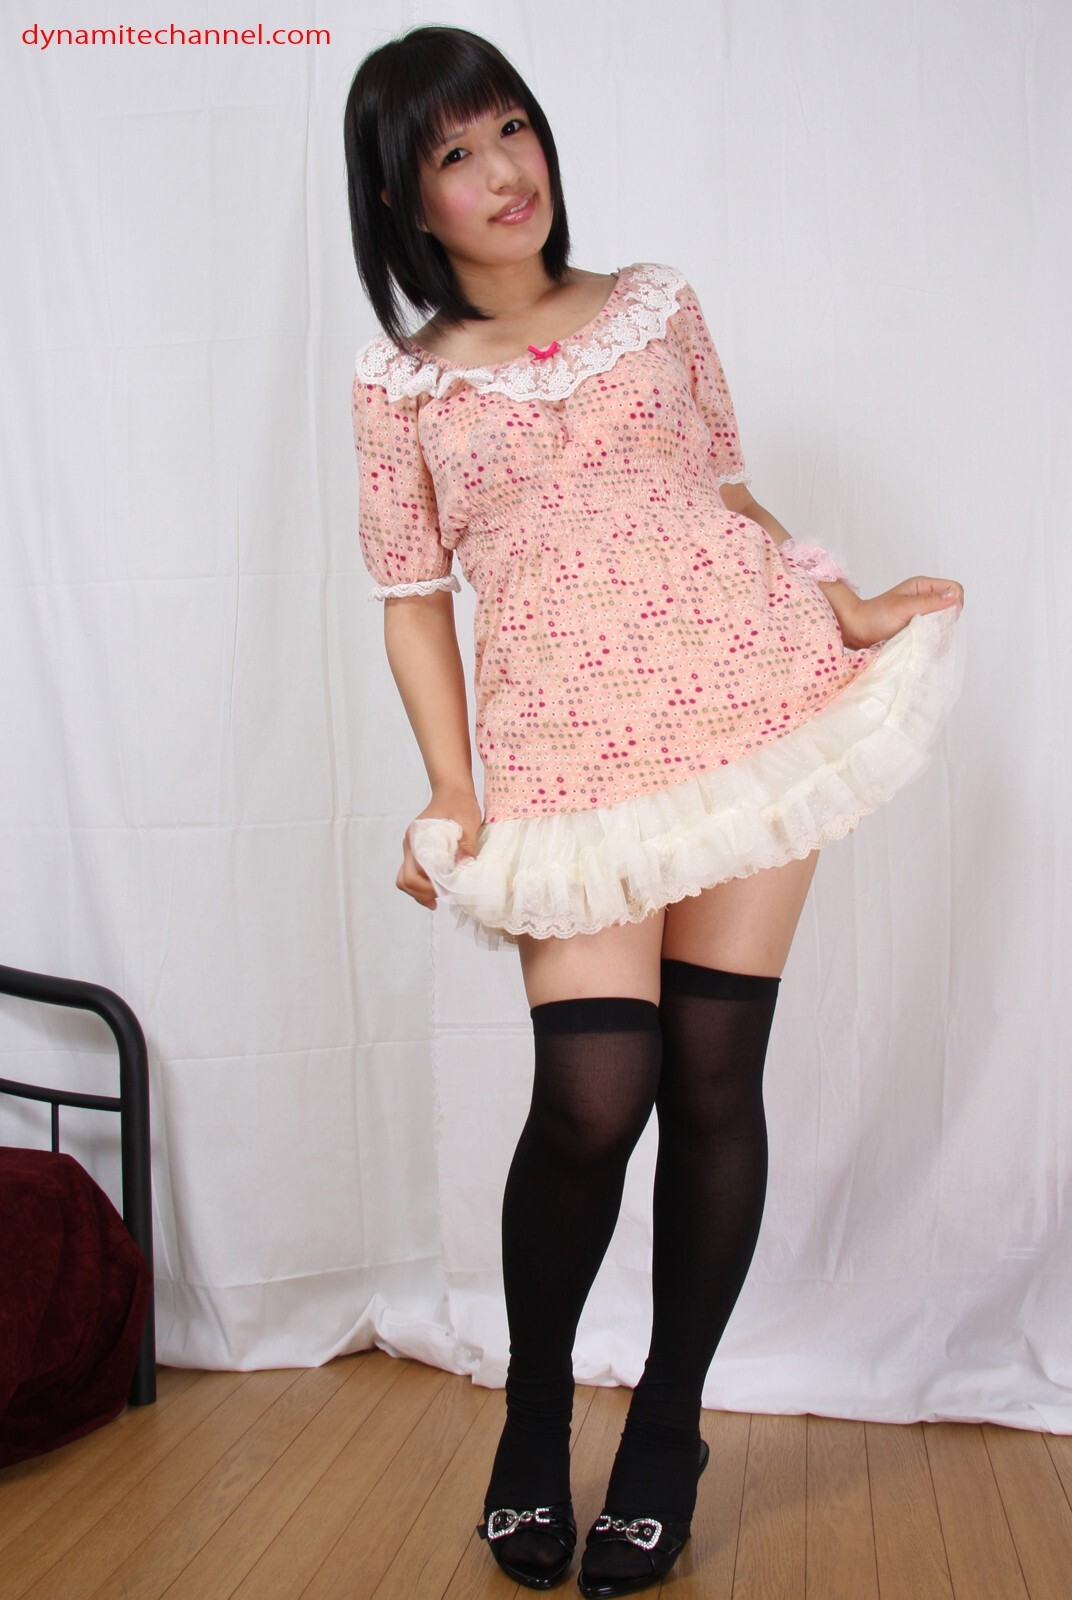 [dynamiechannel [06-21] yuzoyetong's photo of super sexy Japanese silk stockings